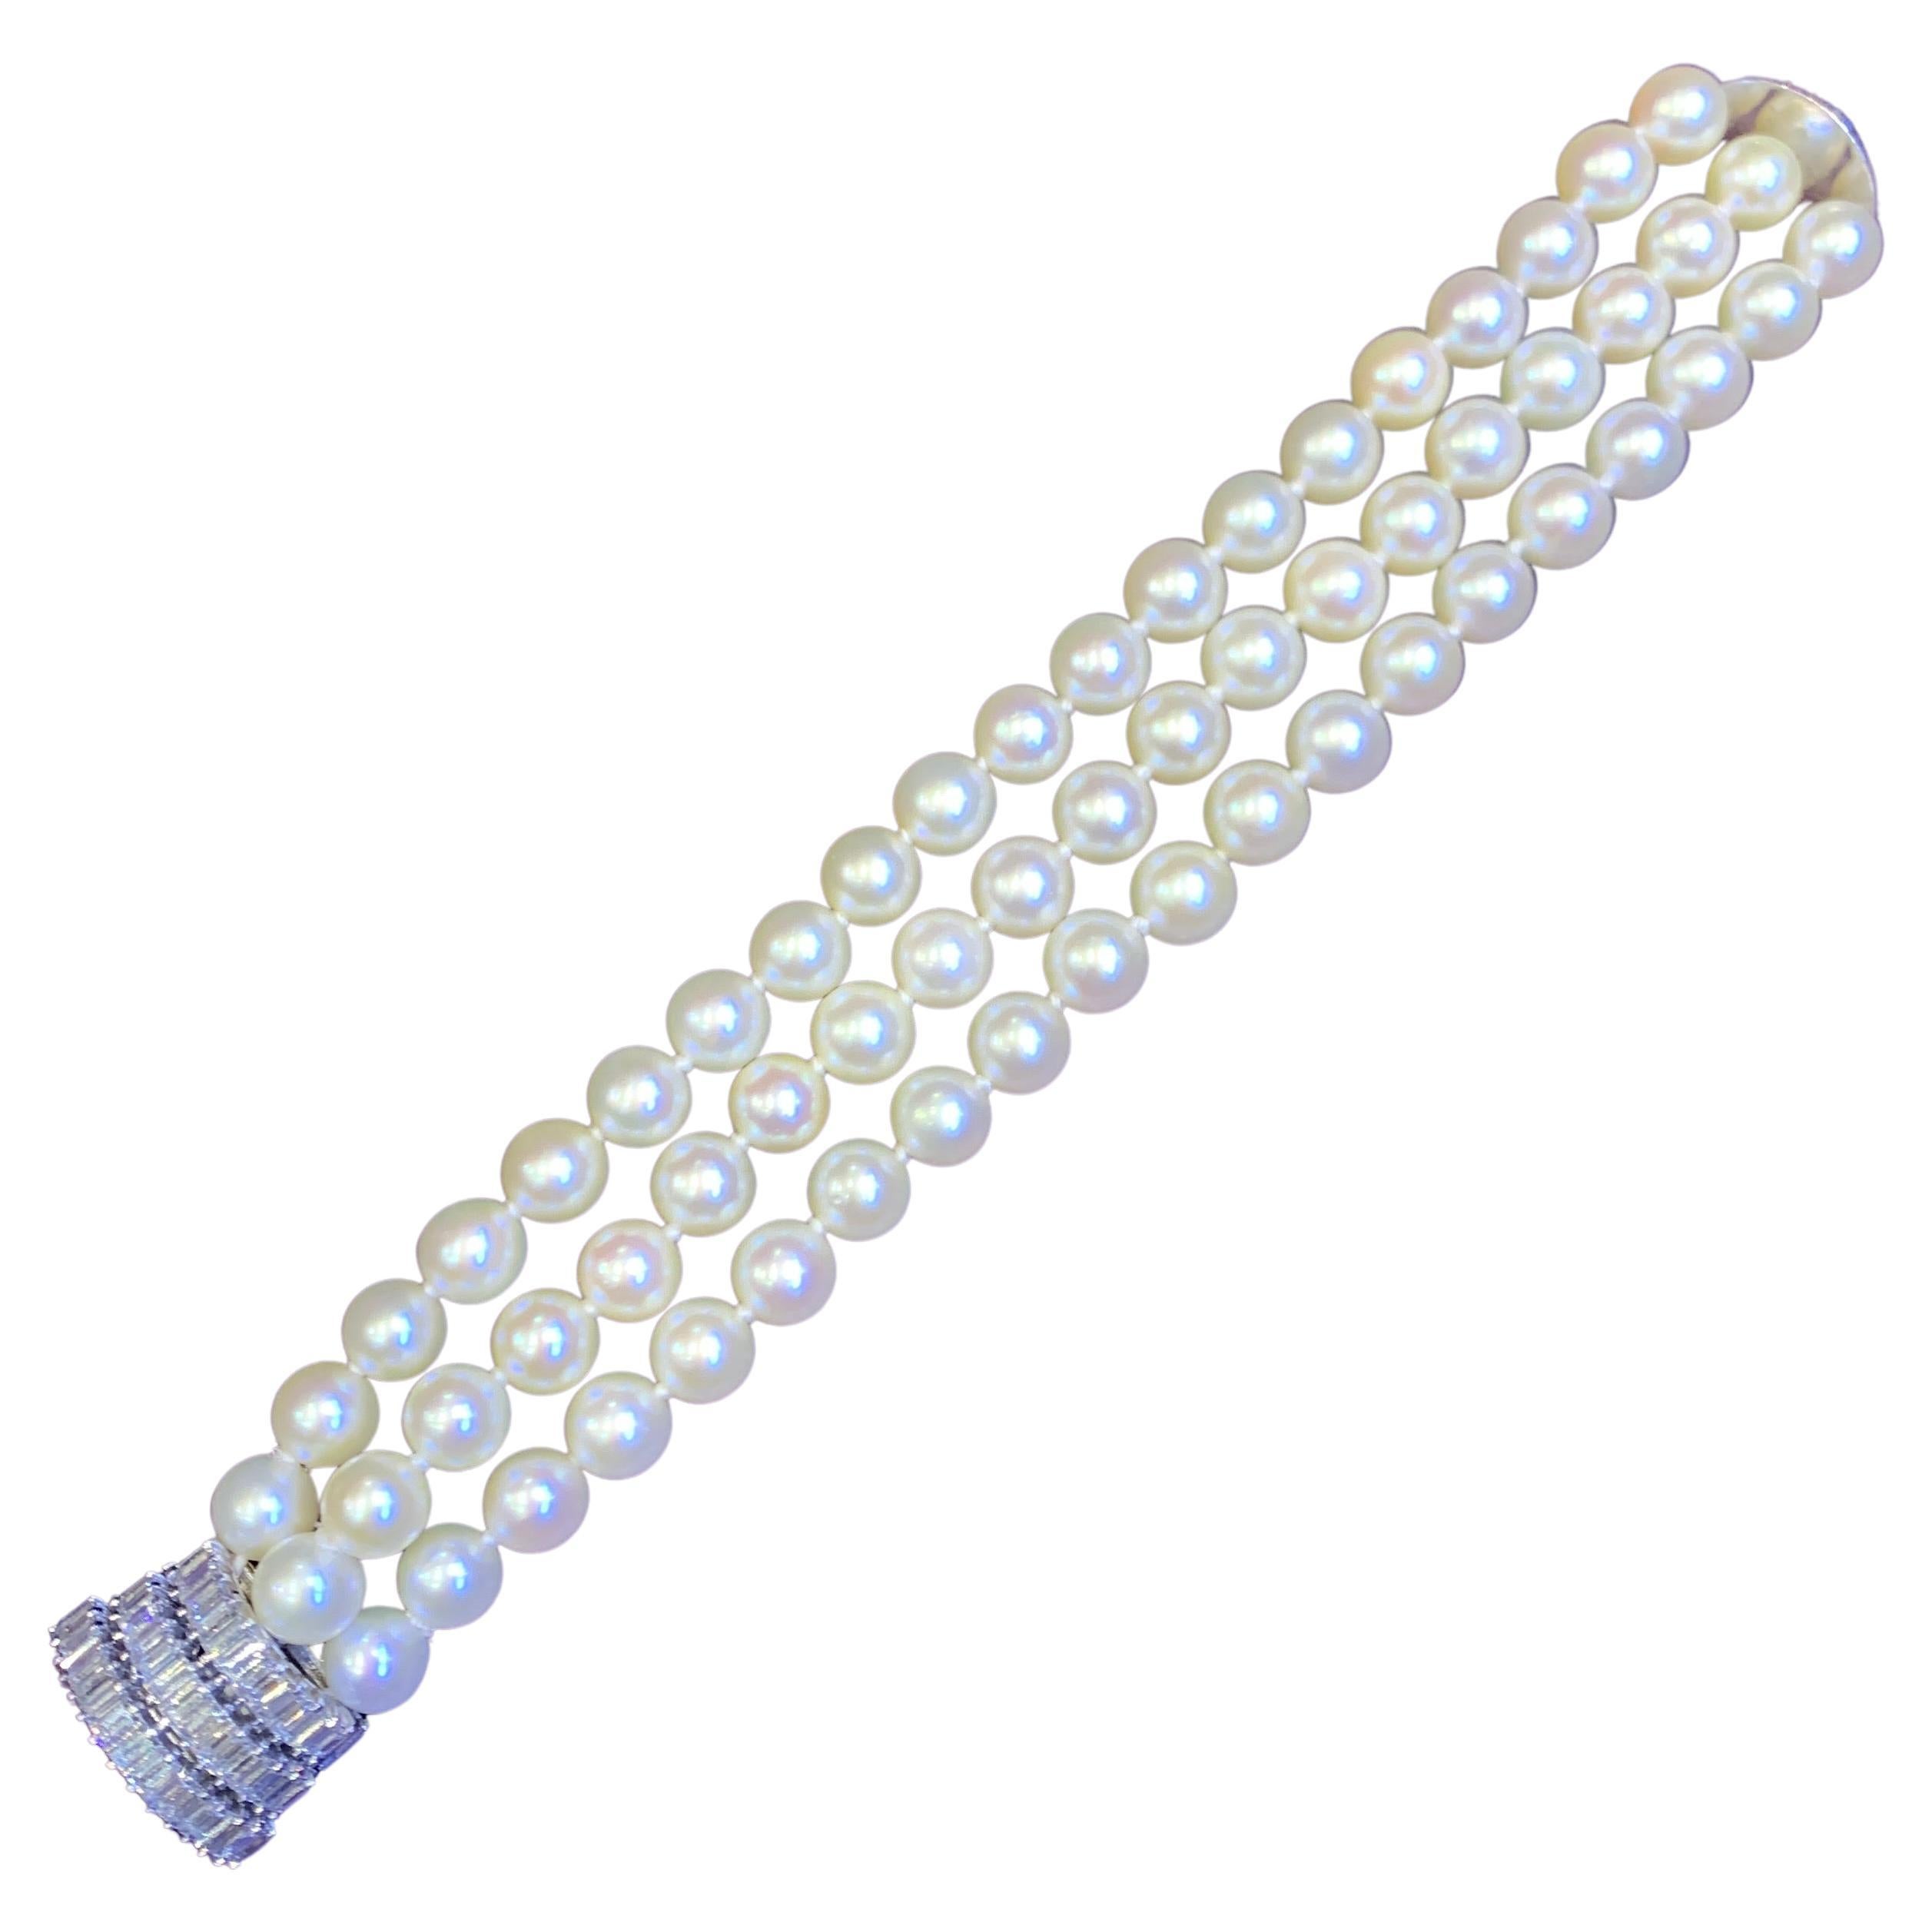 Bracelet à trois rangs de perles et de diamants

Ce bracelet se compose de 3 rangées de perles attachées par un fermoir en platine serti de 39 diamants de taille baguette. 

Poids total approximatif des diamants : 4,29 carats

Longueur : 6.75